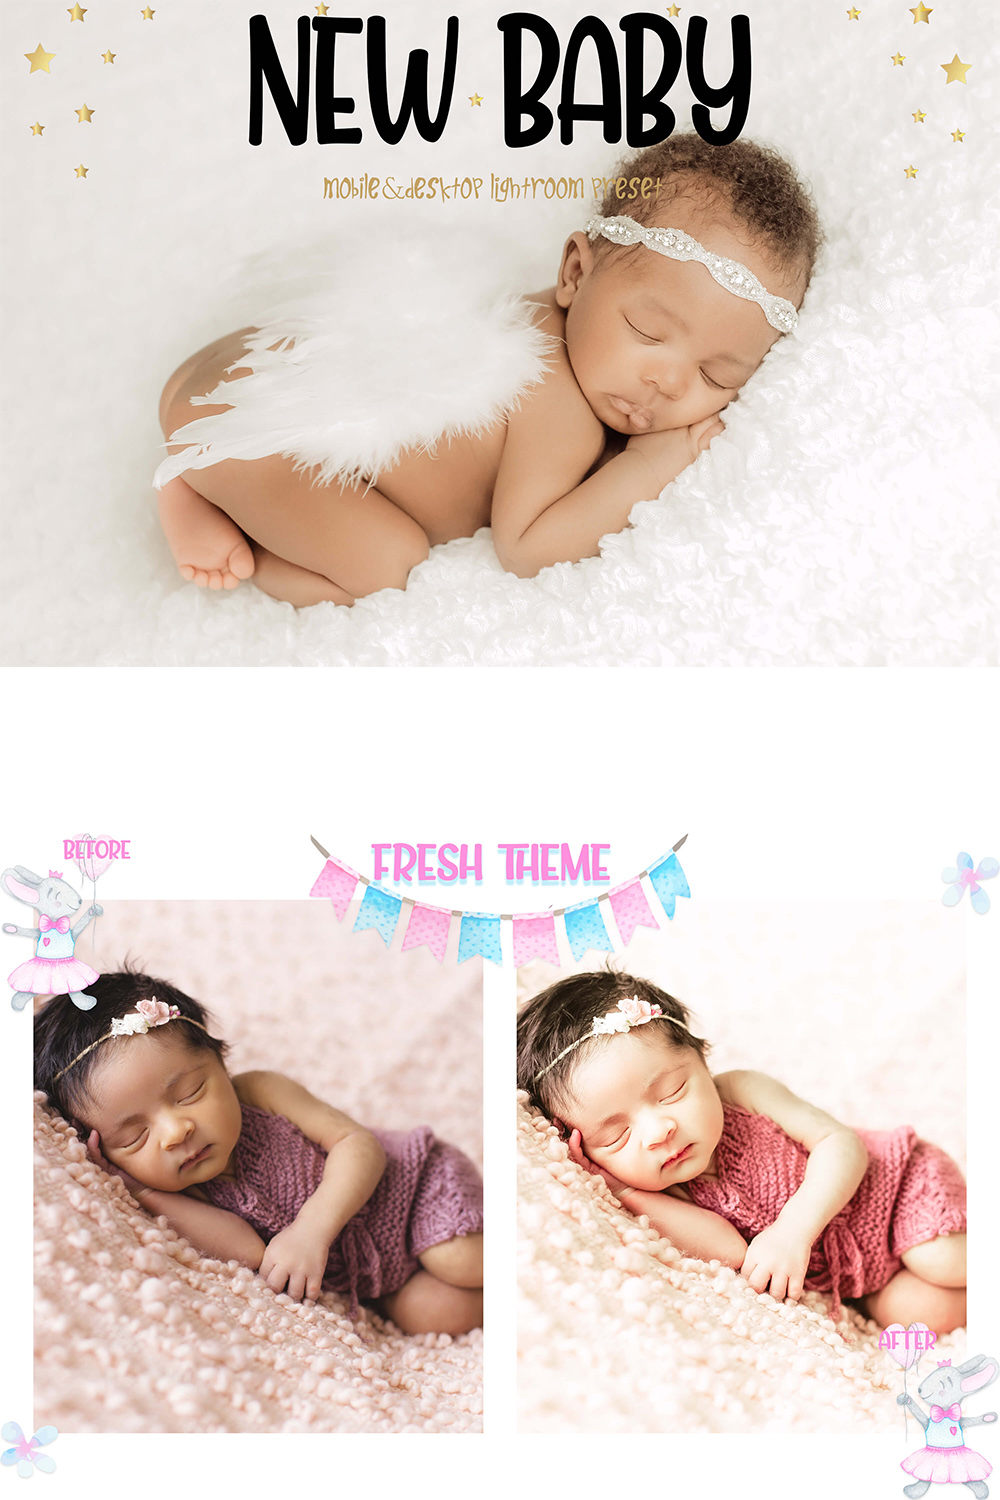 10 Black Baby Mobile & Desktop Lightroom Presets, dark child skin LR preset, Portrait Filter, DNG Lifestyle Photographer Instagram Theme pinterest preview image.